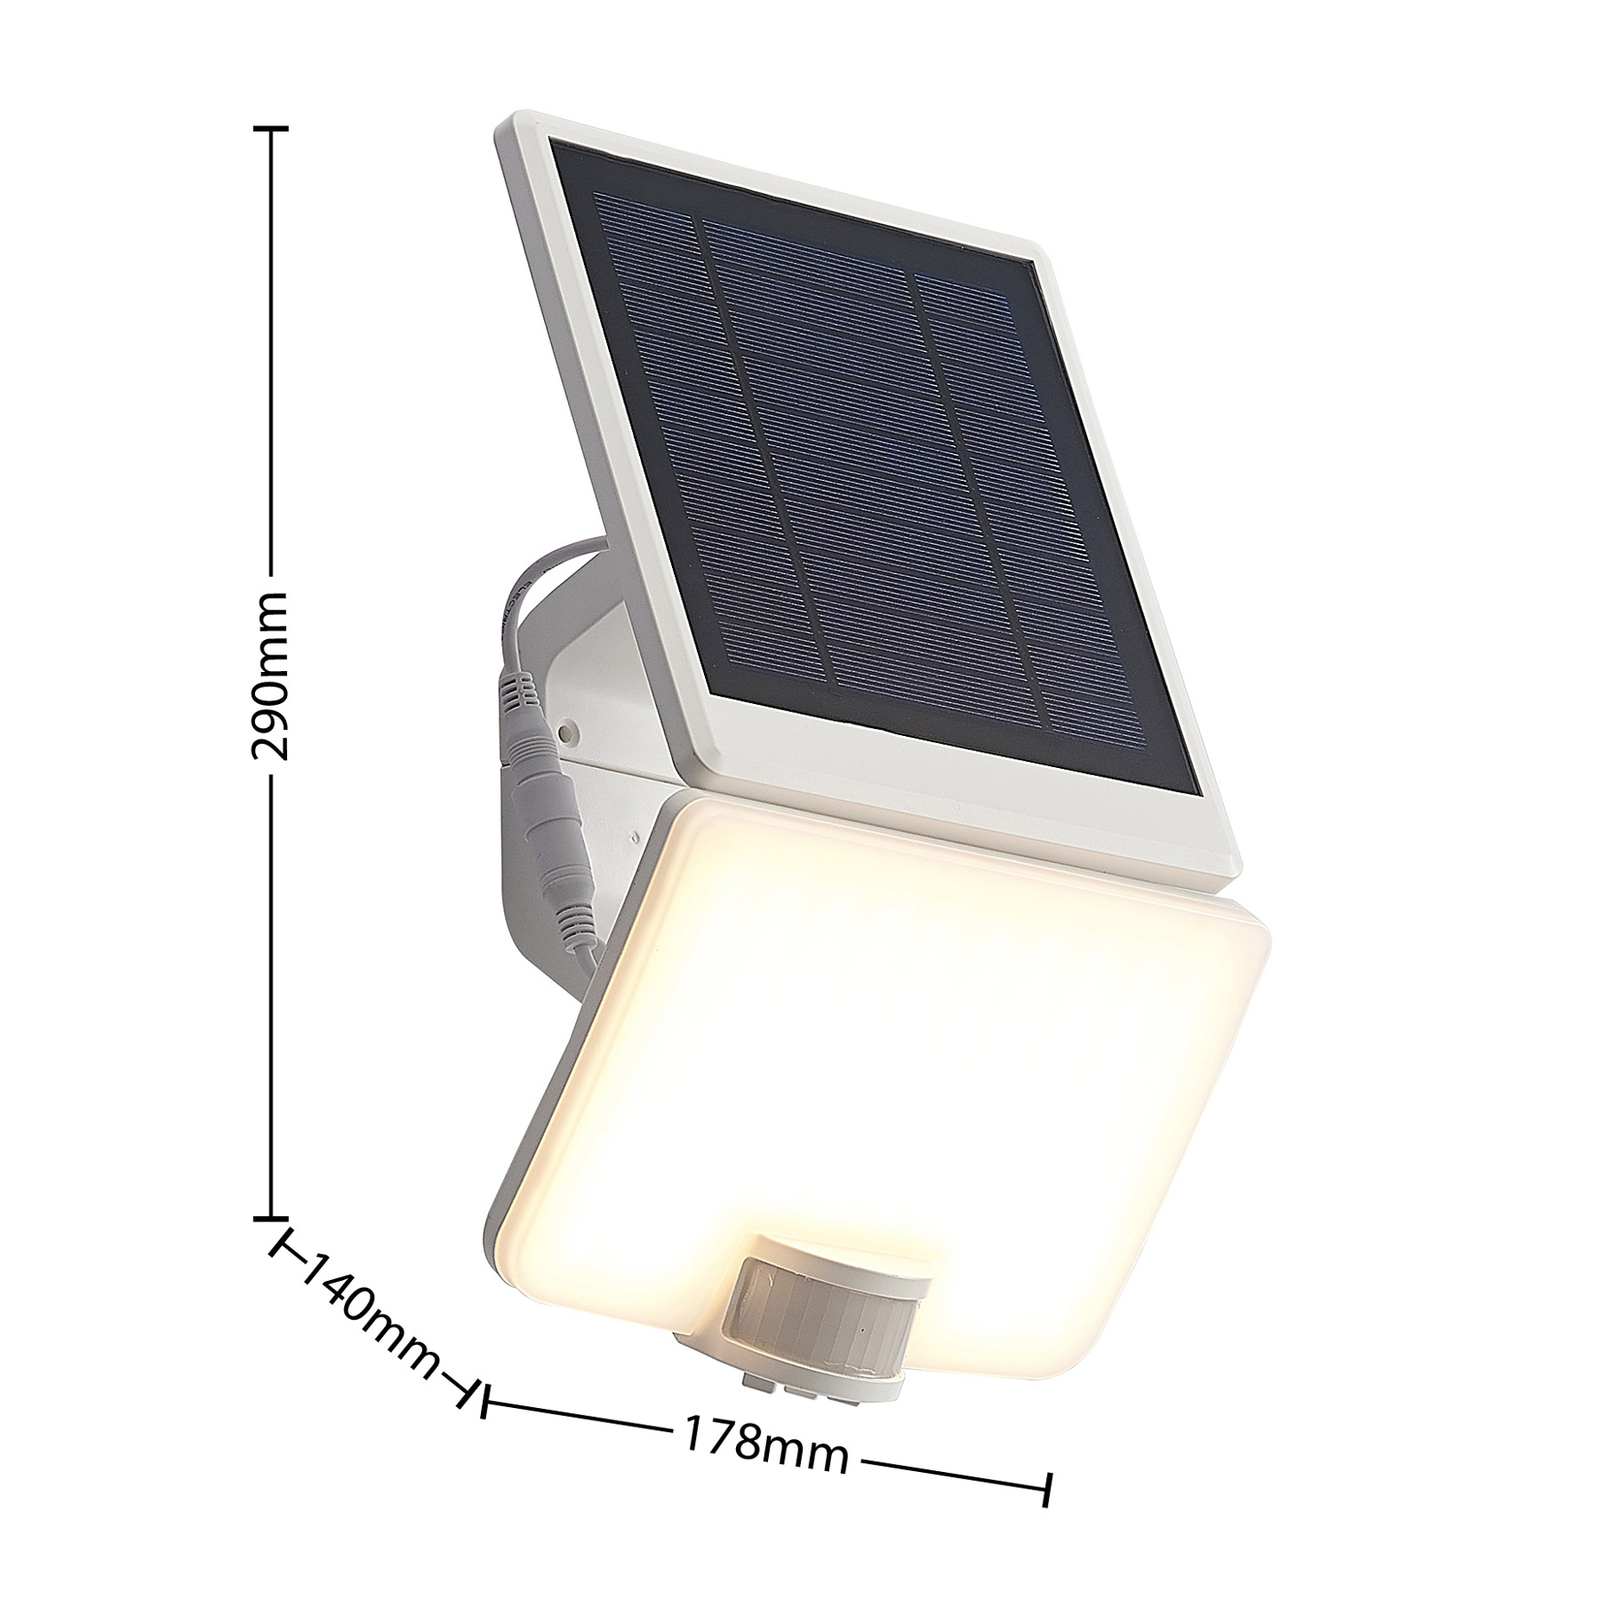 Prios Yahir applique LED solare, sensore, bianco